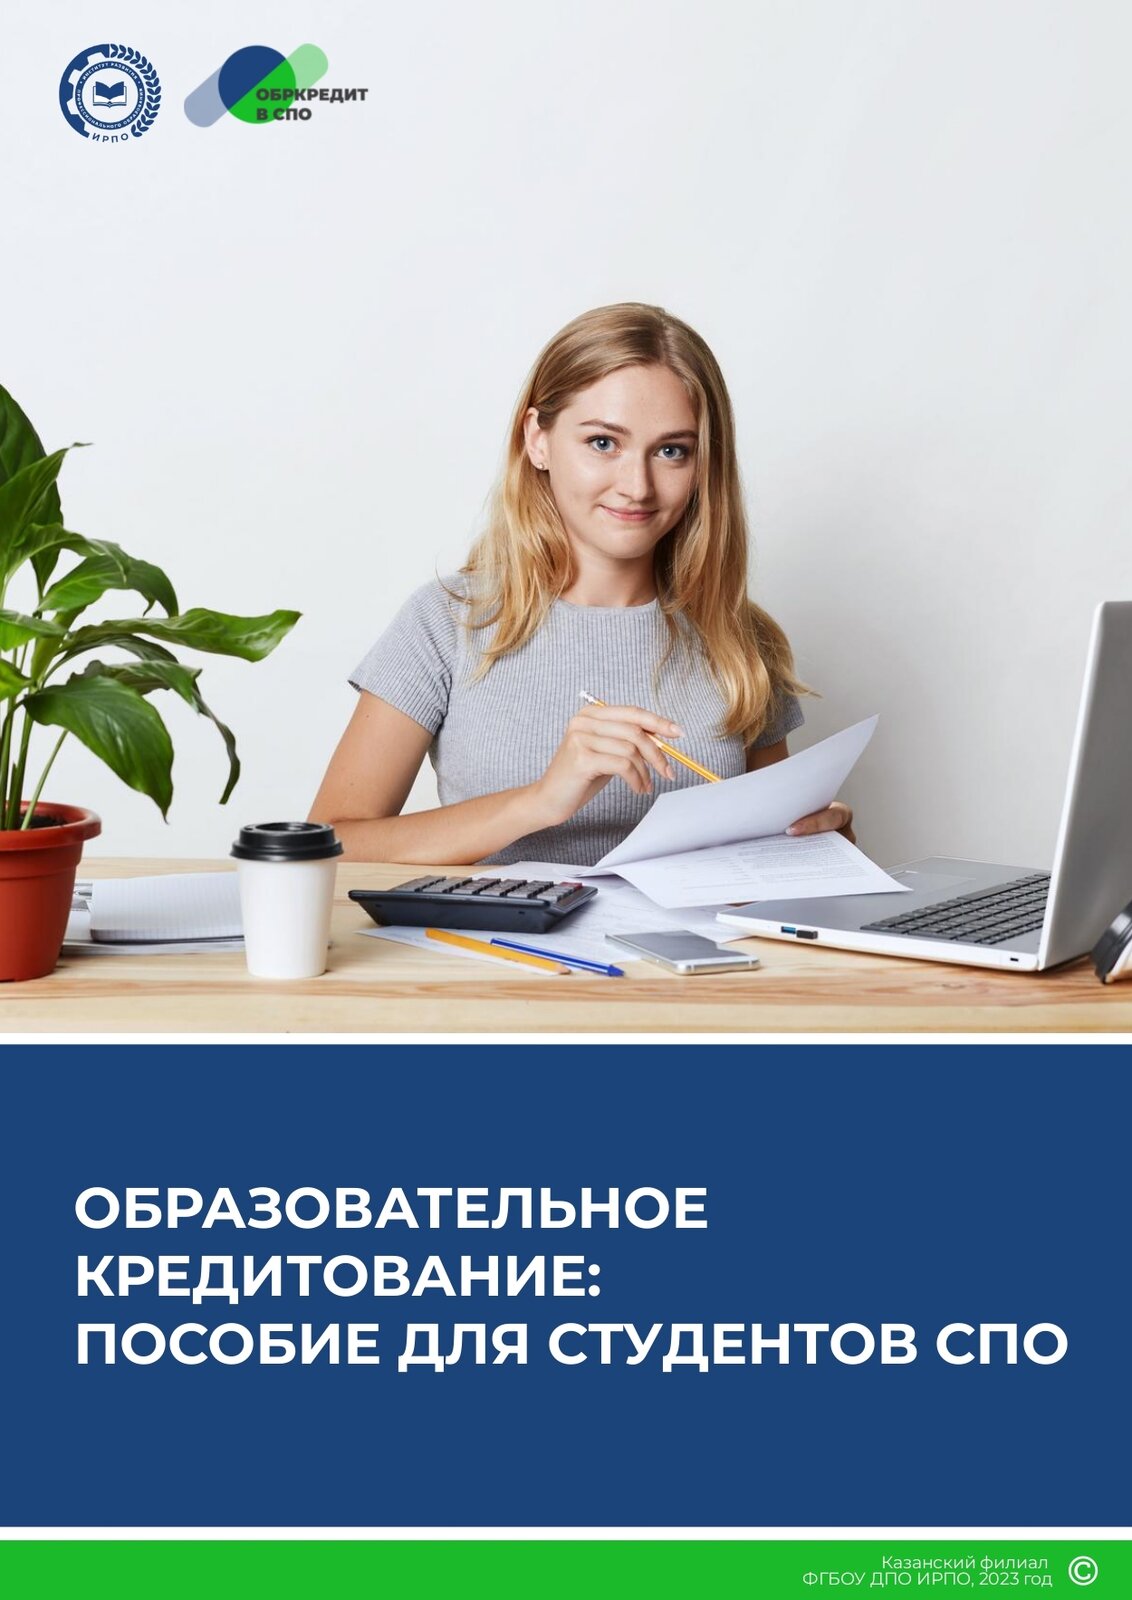 https://r1.nubex.ru/s11758-d7c/f4050_b7/obr_kreditovanie_posobie_dlya_studentov_spo.pdf